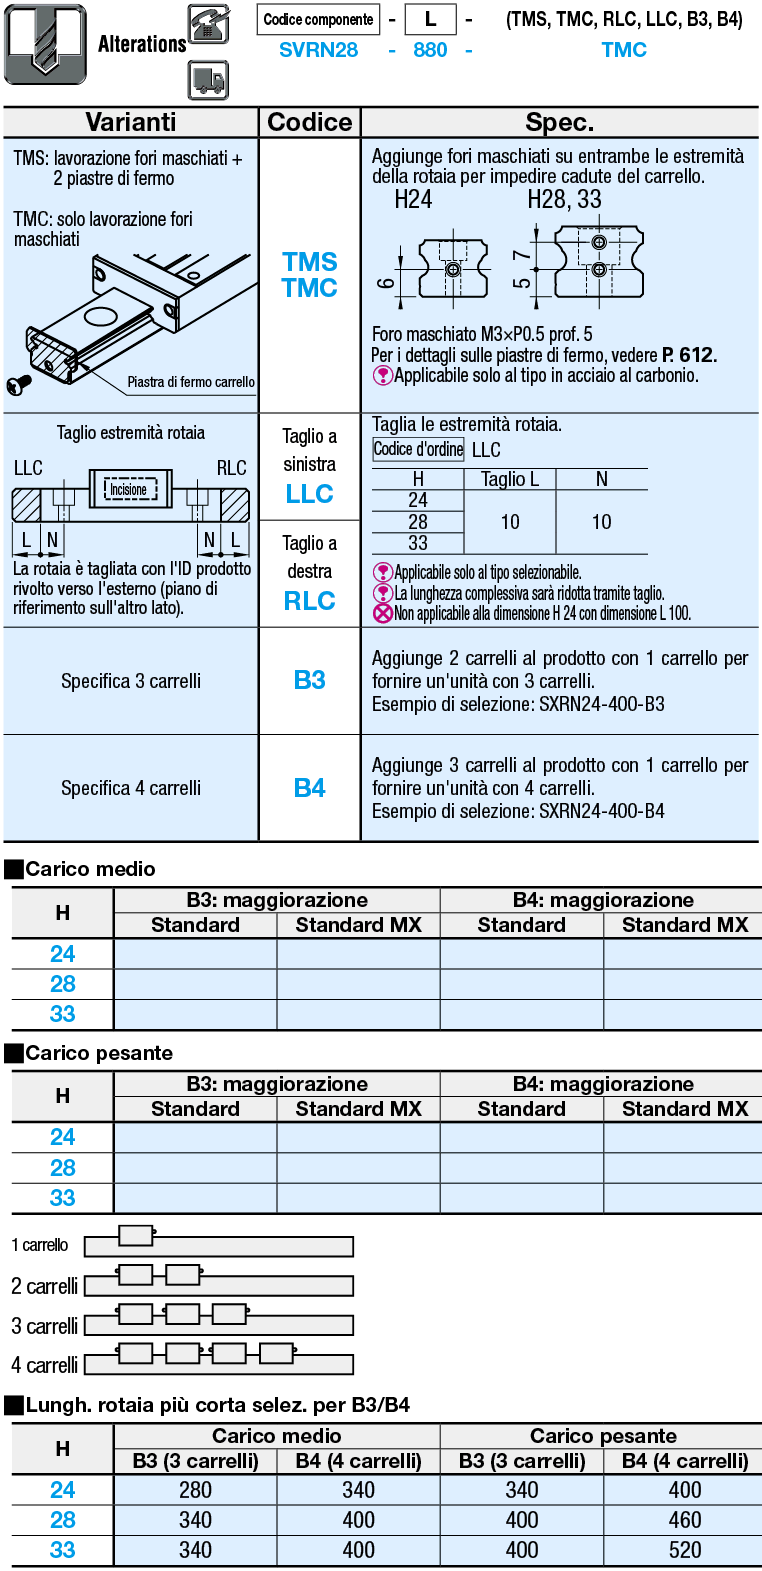 Guide lineari per carico medio/Con fori di riferimento:Immagine relativa